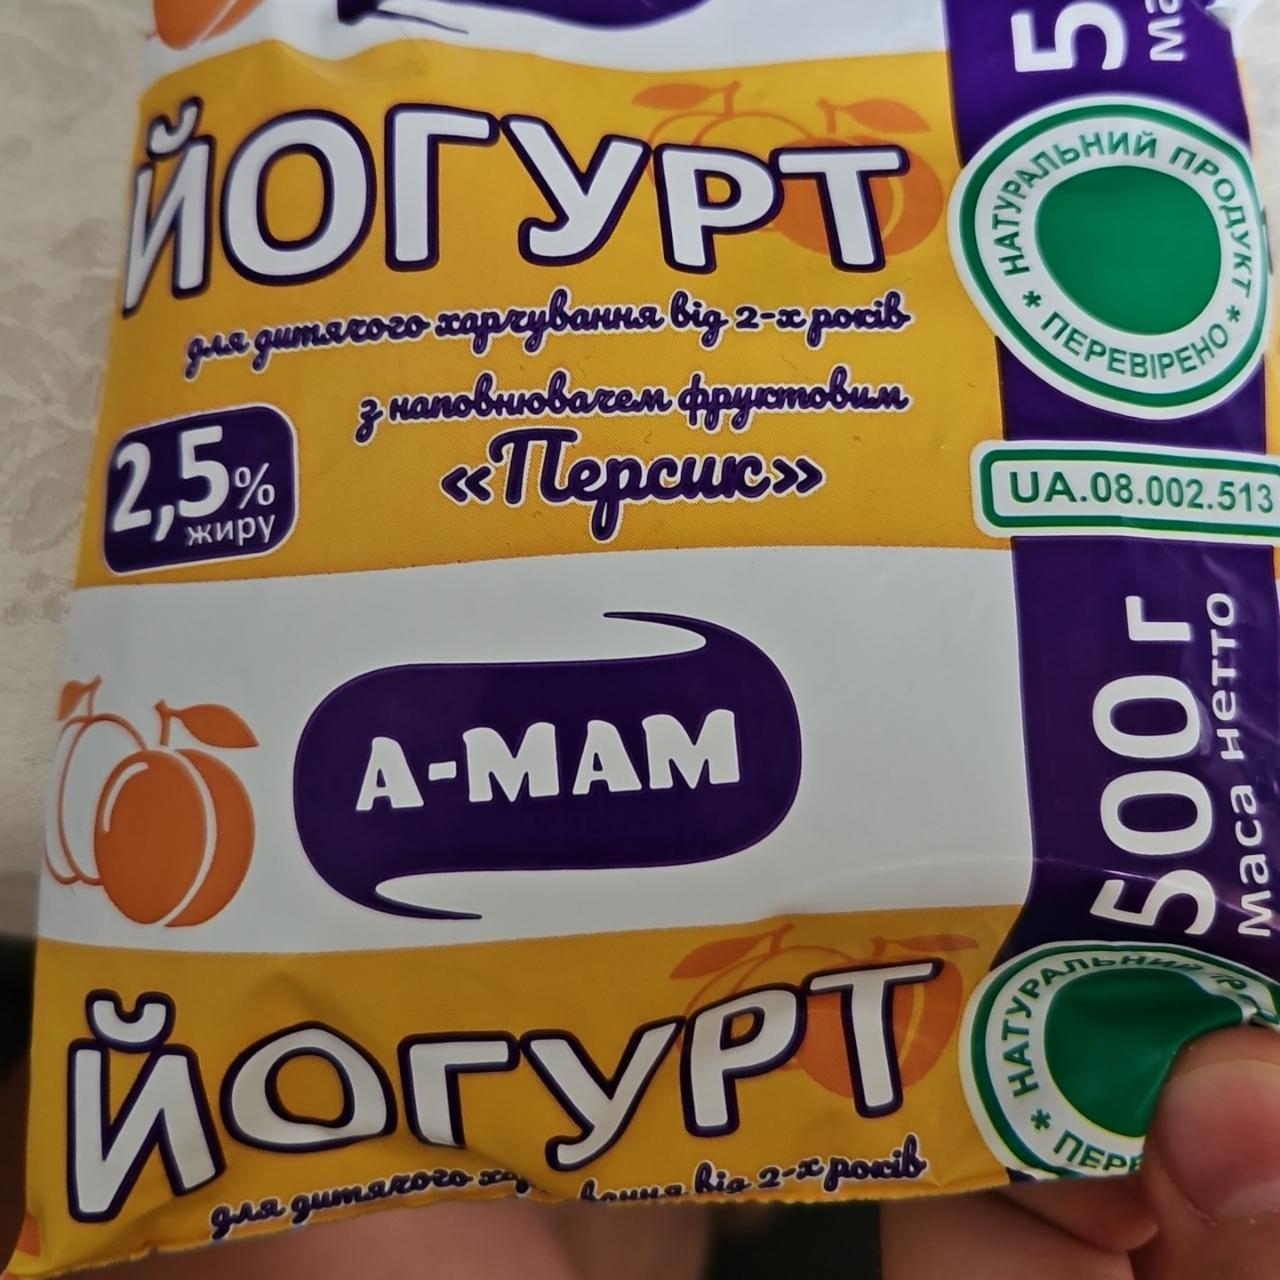 Фото - йогурт питьевой персик A-MAM